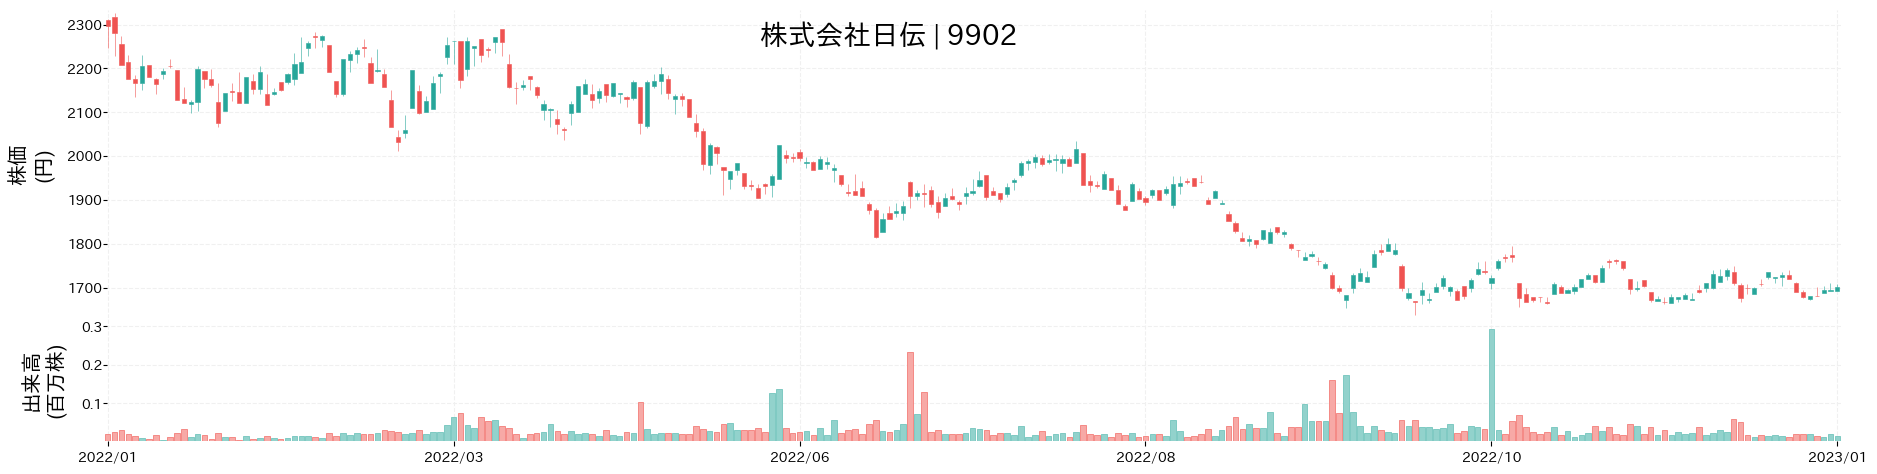 日伝の株価推移(2022)